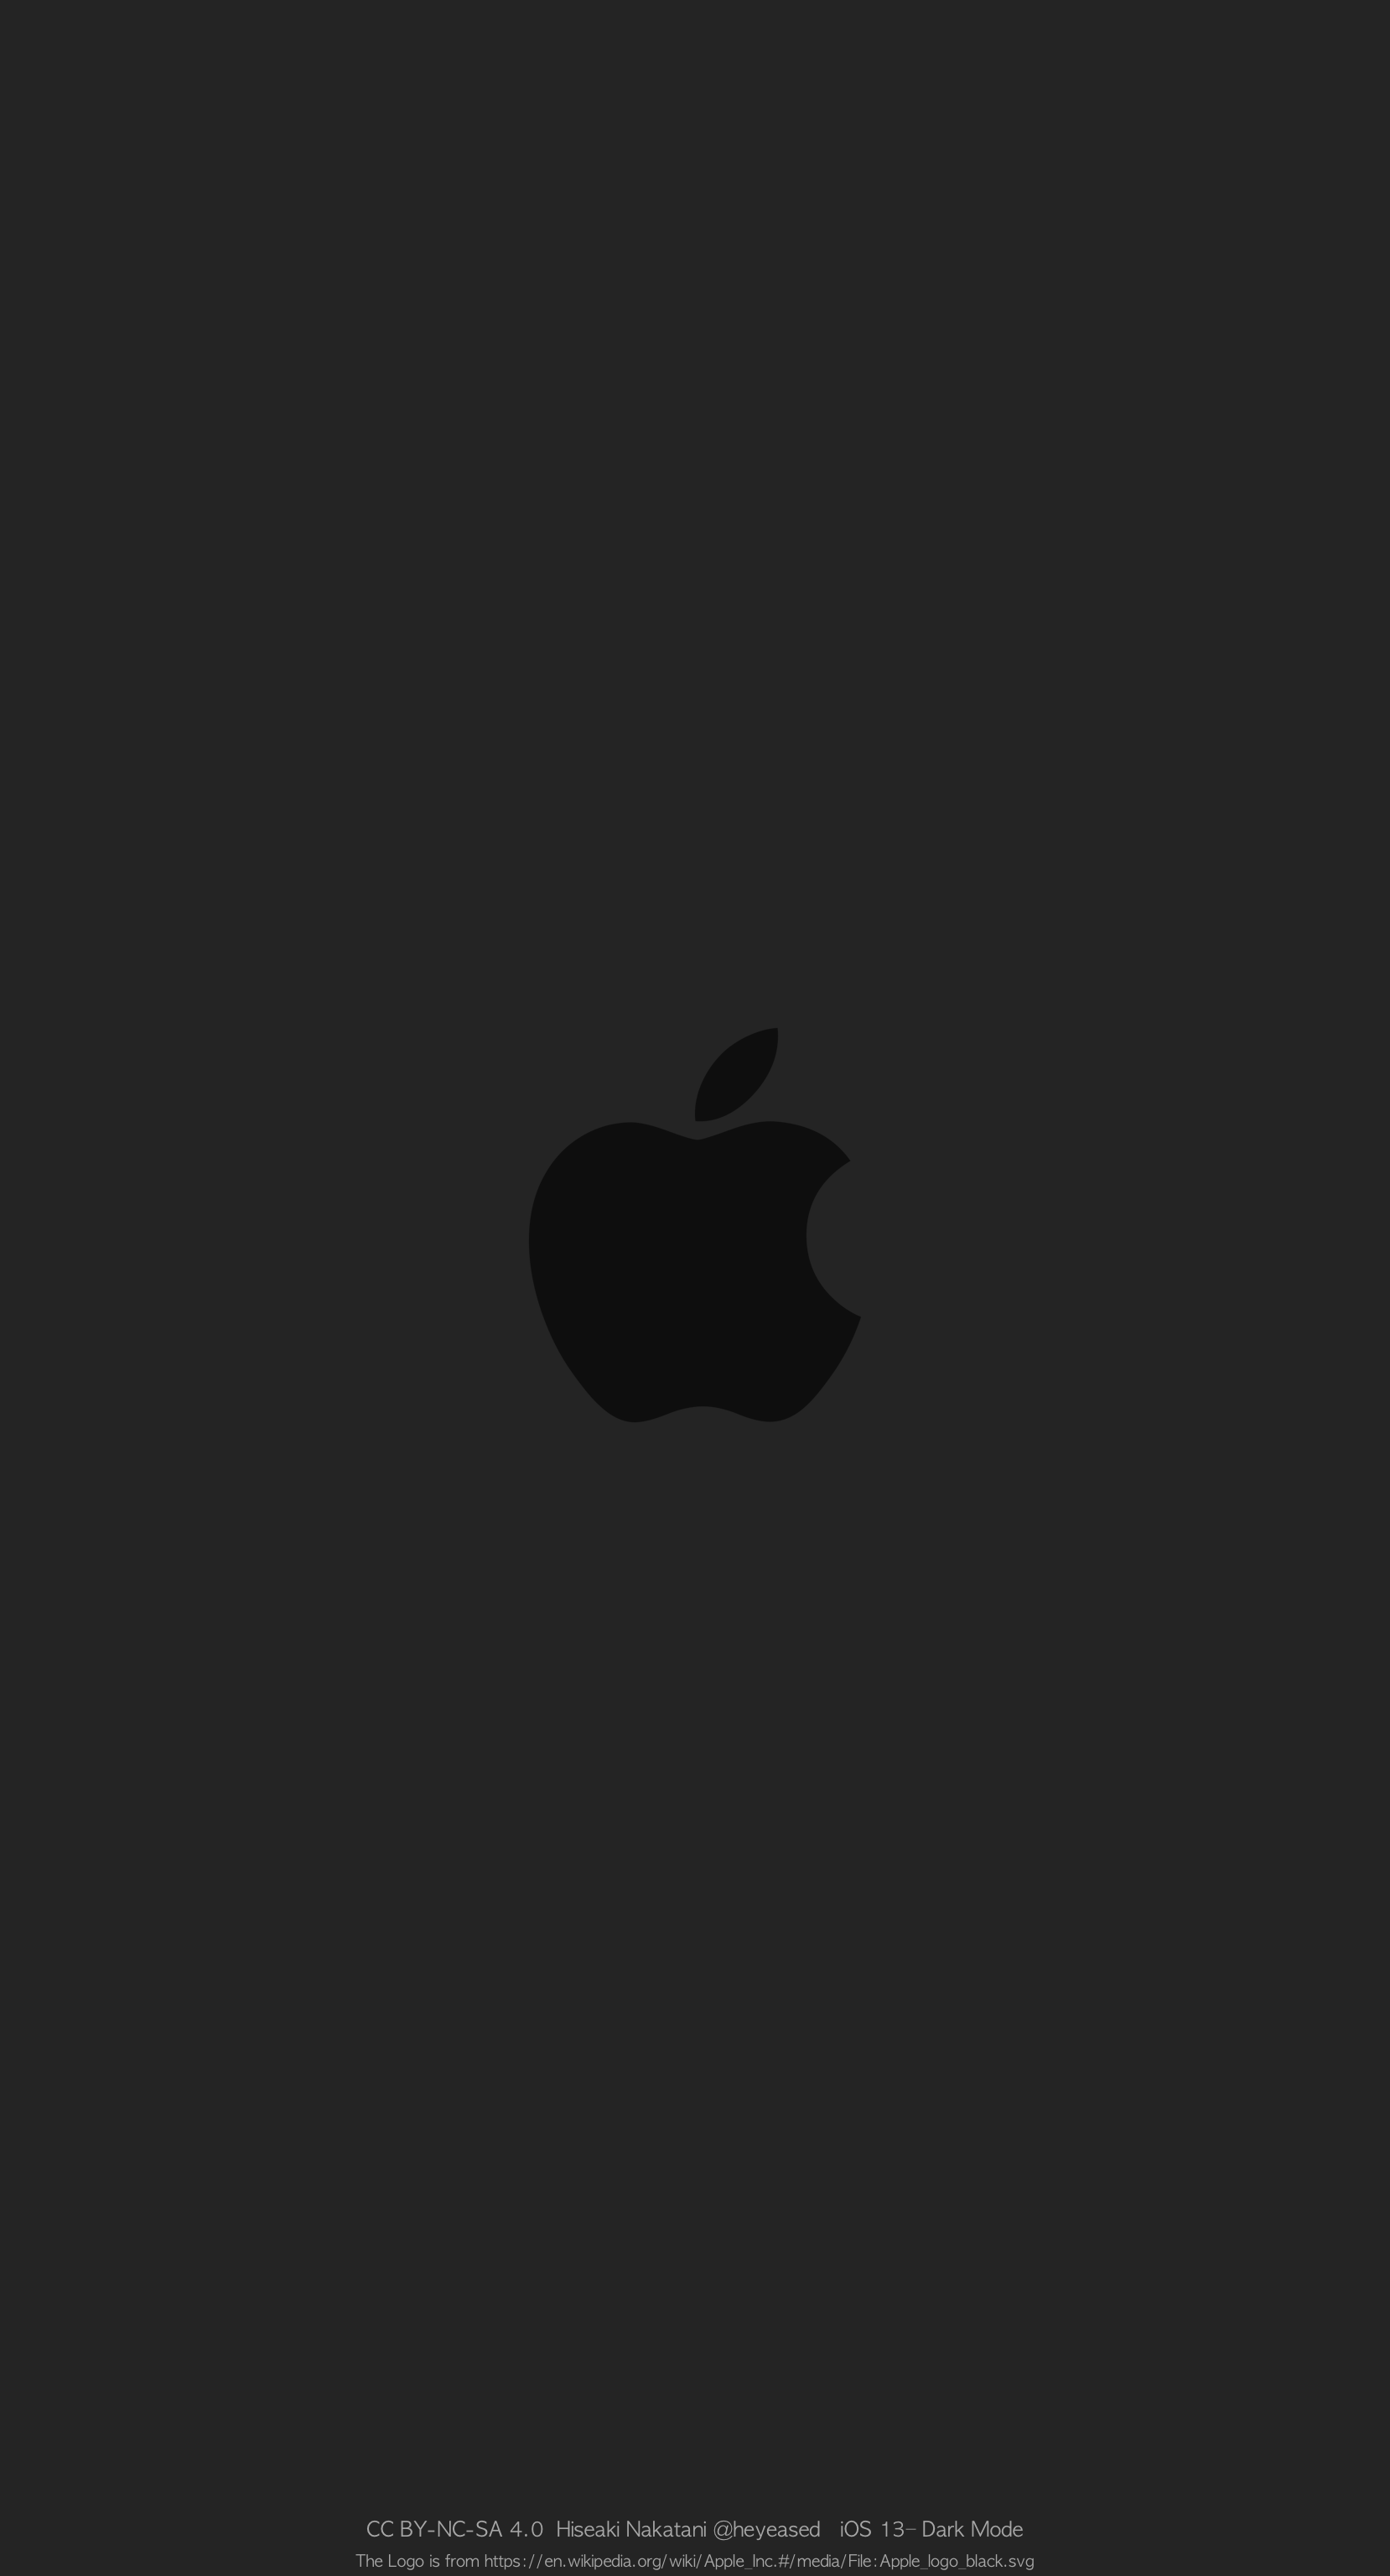 ドックを隠すりんごの壁紙/Hide Dock Apple - Mysterious iPhone Wallpaper